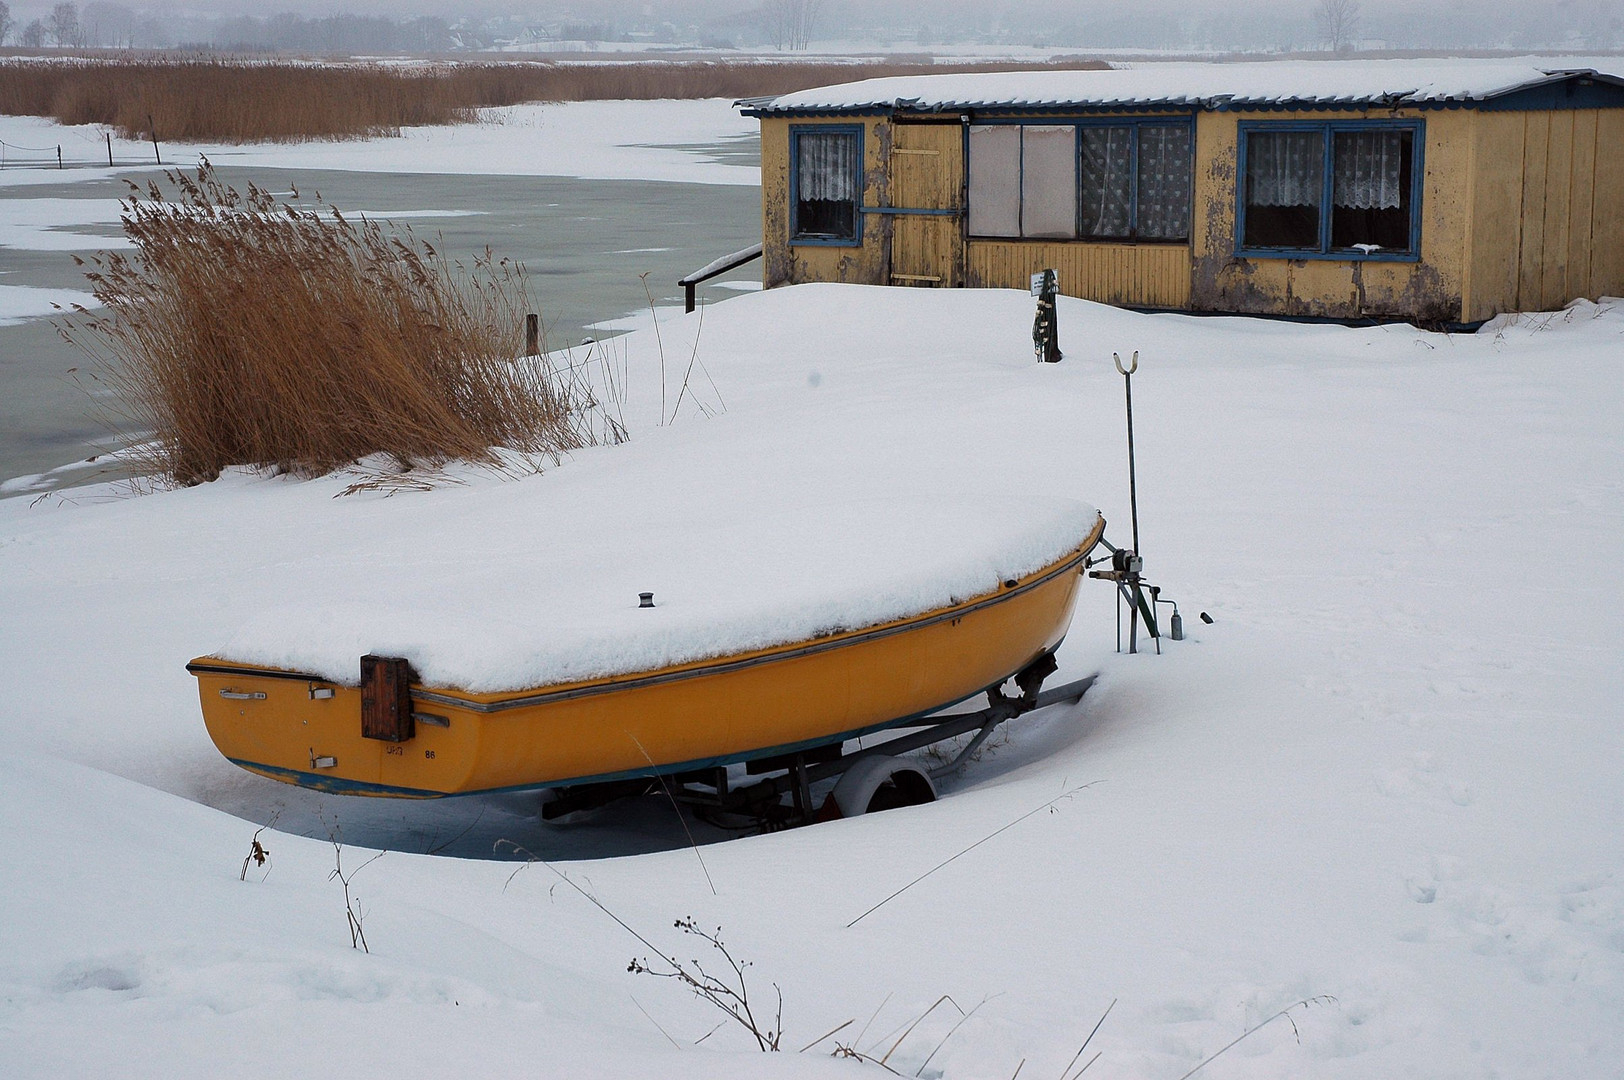 Winter auf Rügen 3 - mein Haus, mein Boot, mein See (Bodden..)